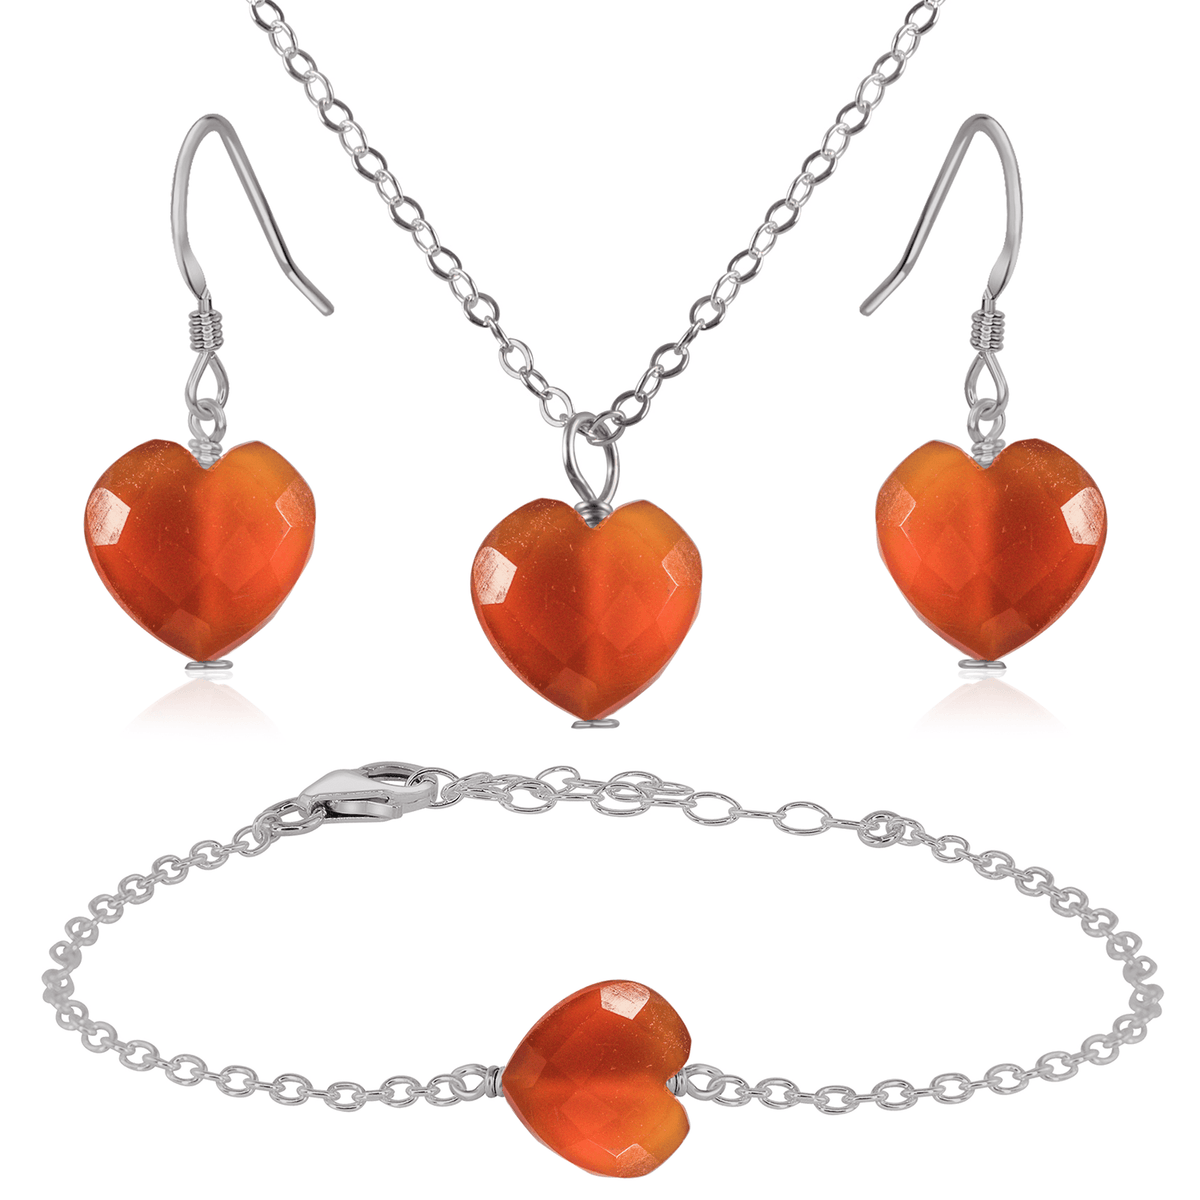 Carnelian Crystal Heart Jewellery Set - Carnelian Crystal Heart Jewellery Set - Stainless Steel / Cable / Necklace & Earrings & Bracelet - Luna Tide Handmade Crystal Jewellery